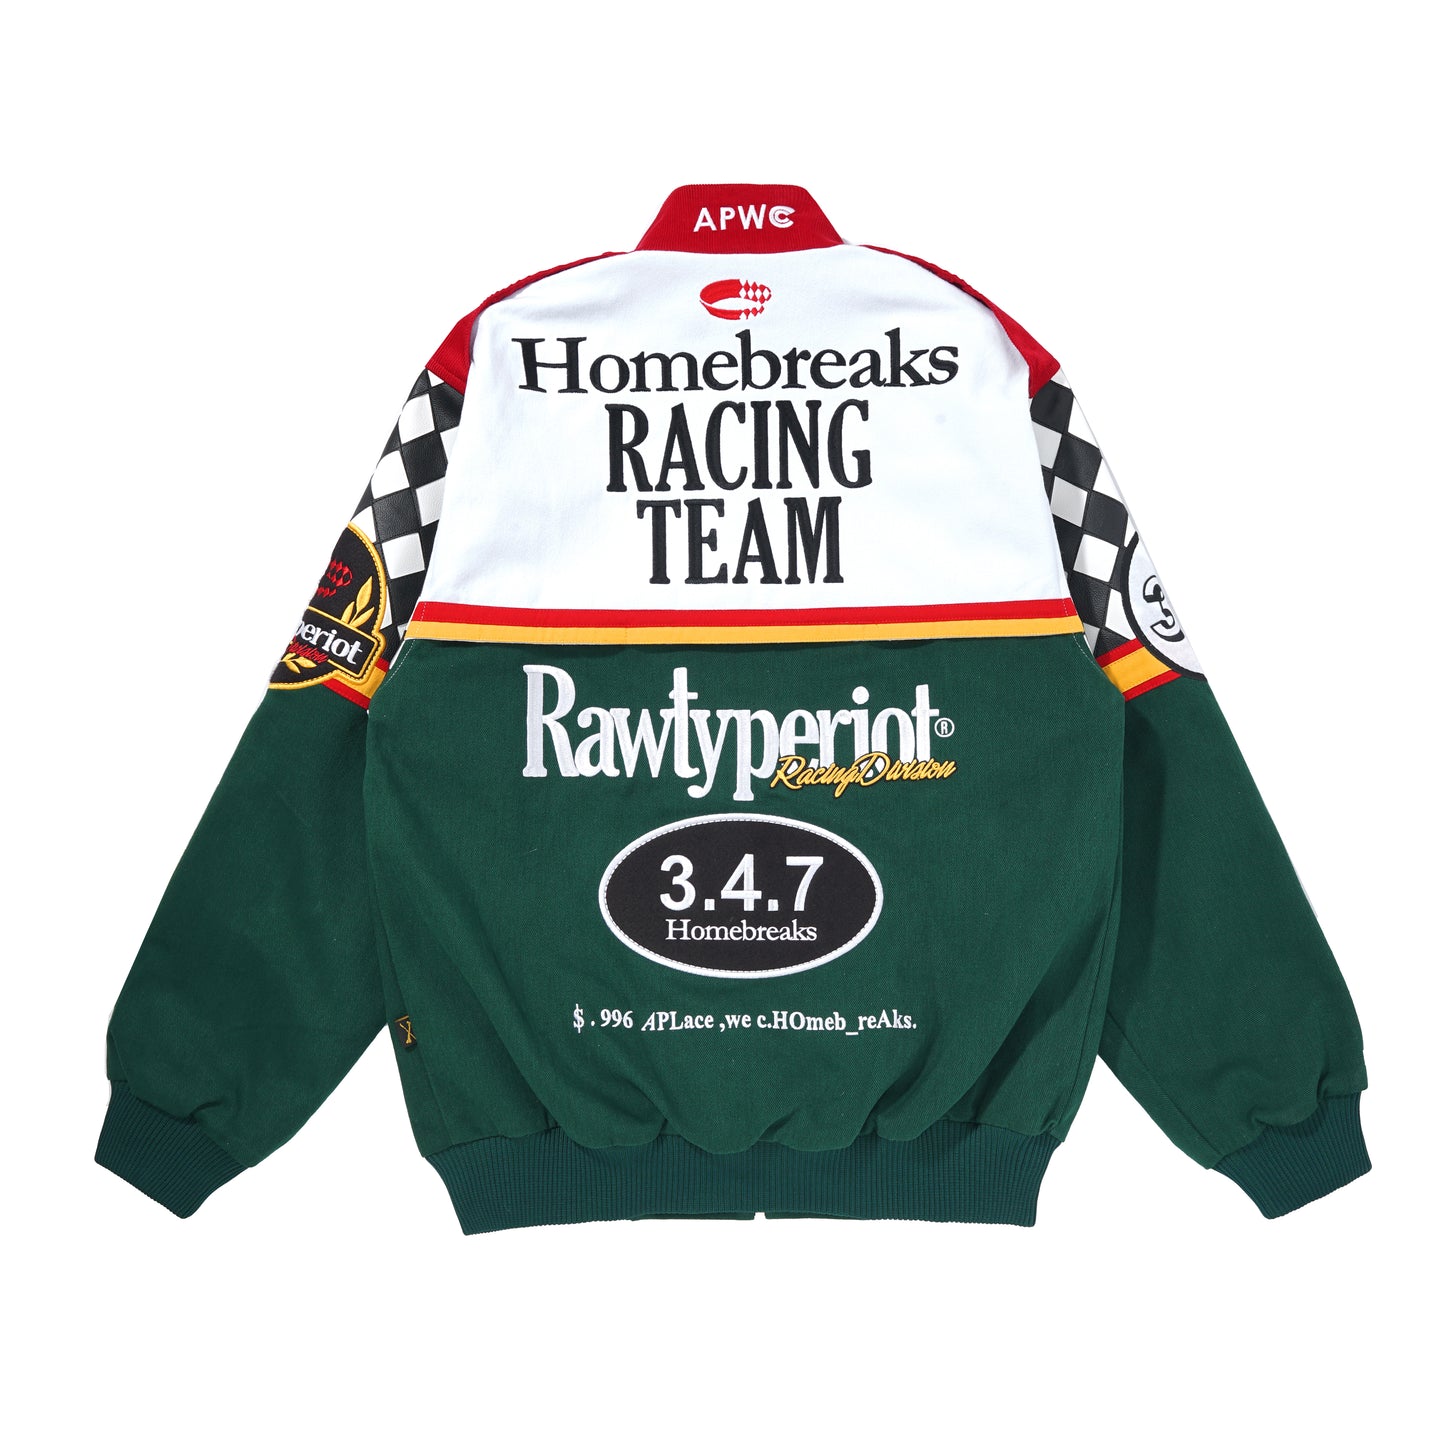 Homebreaks Vintage Racing Jacket + Get free Mystery Stuff